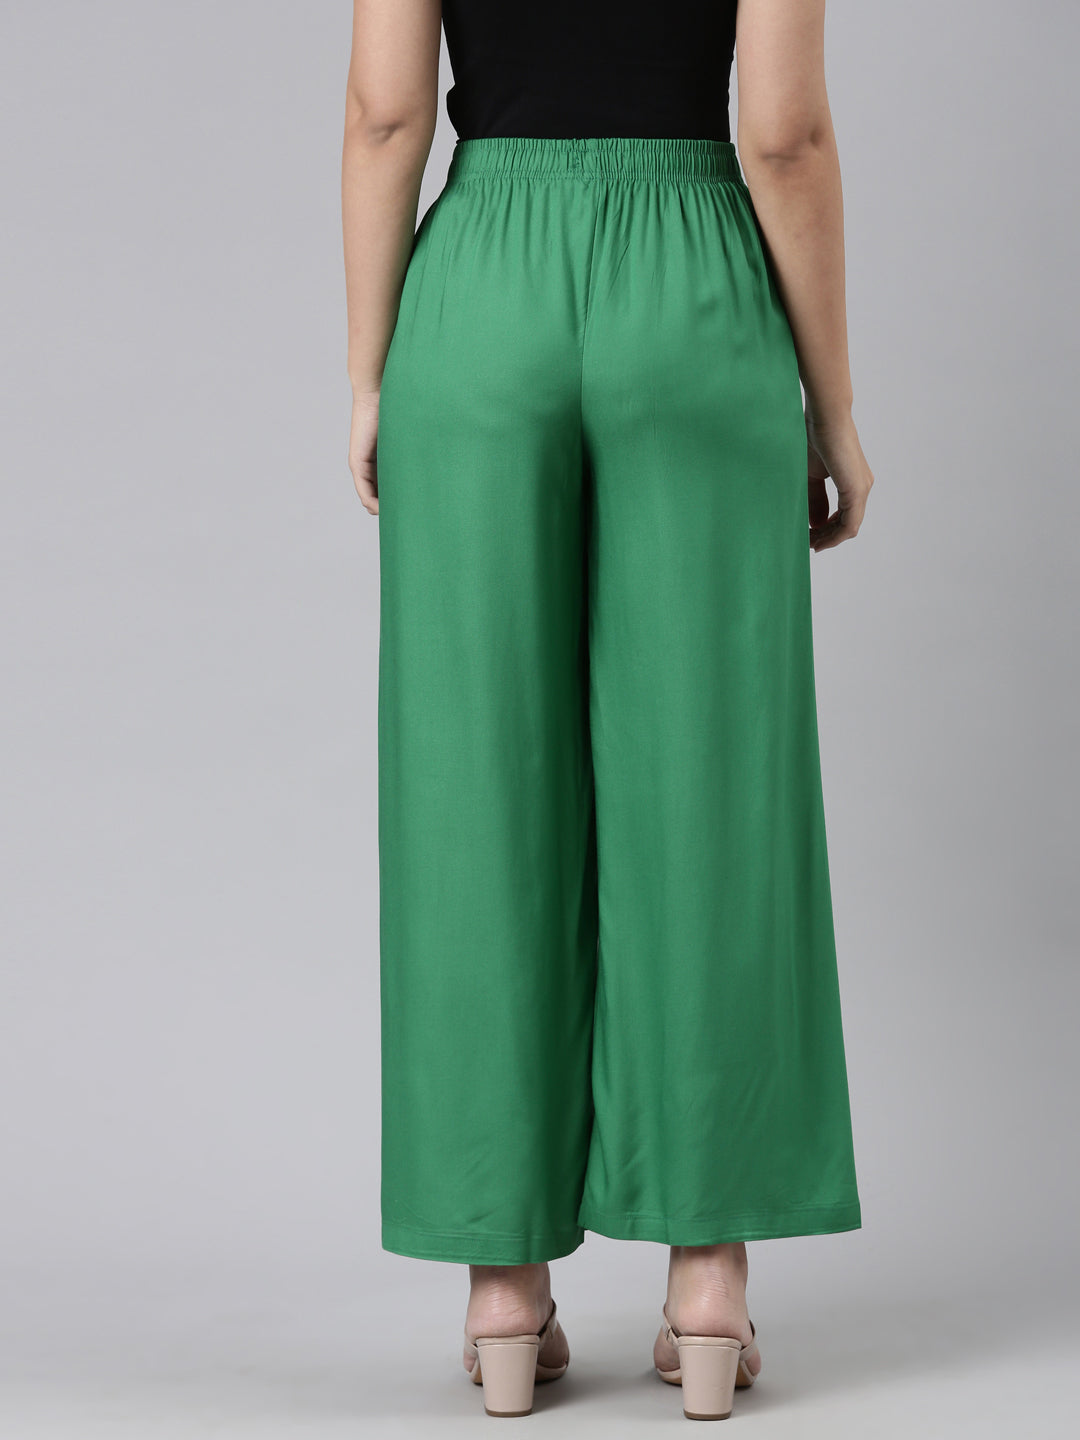 Buy Green Wide Leg Pants for Women Online